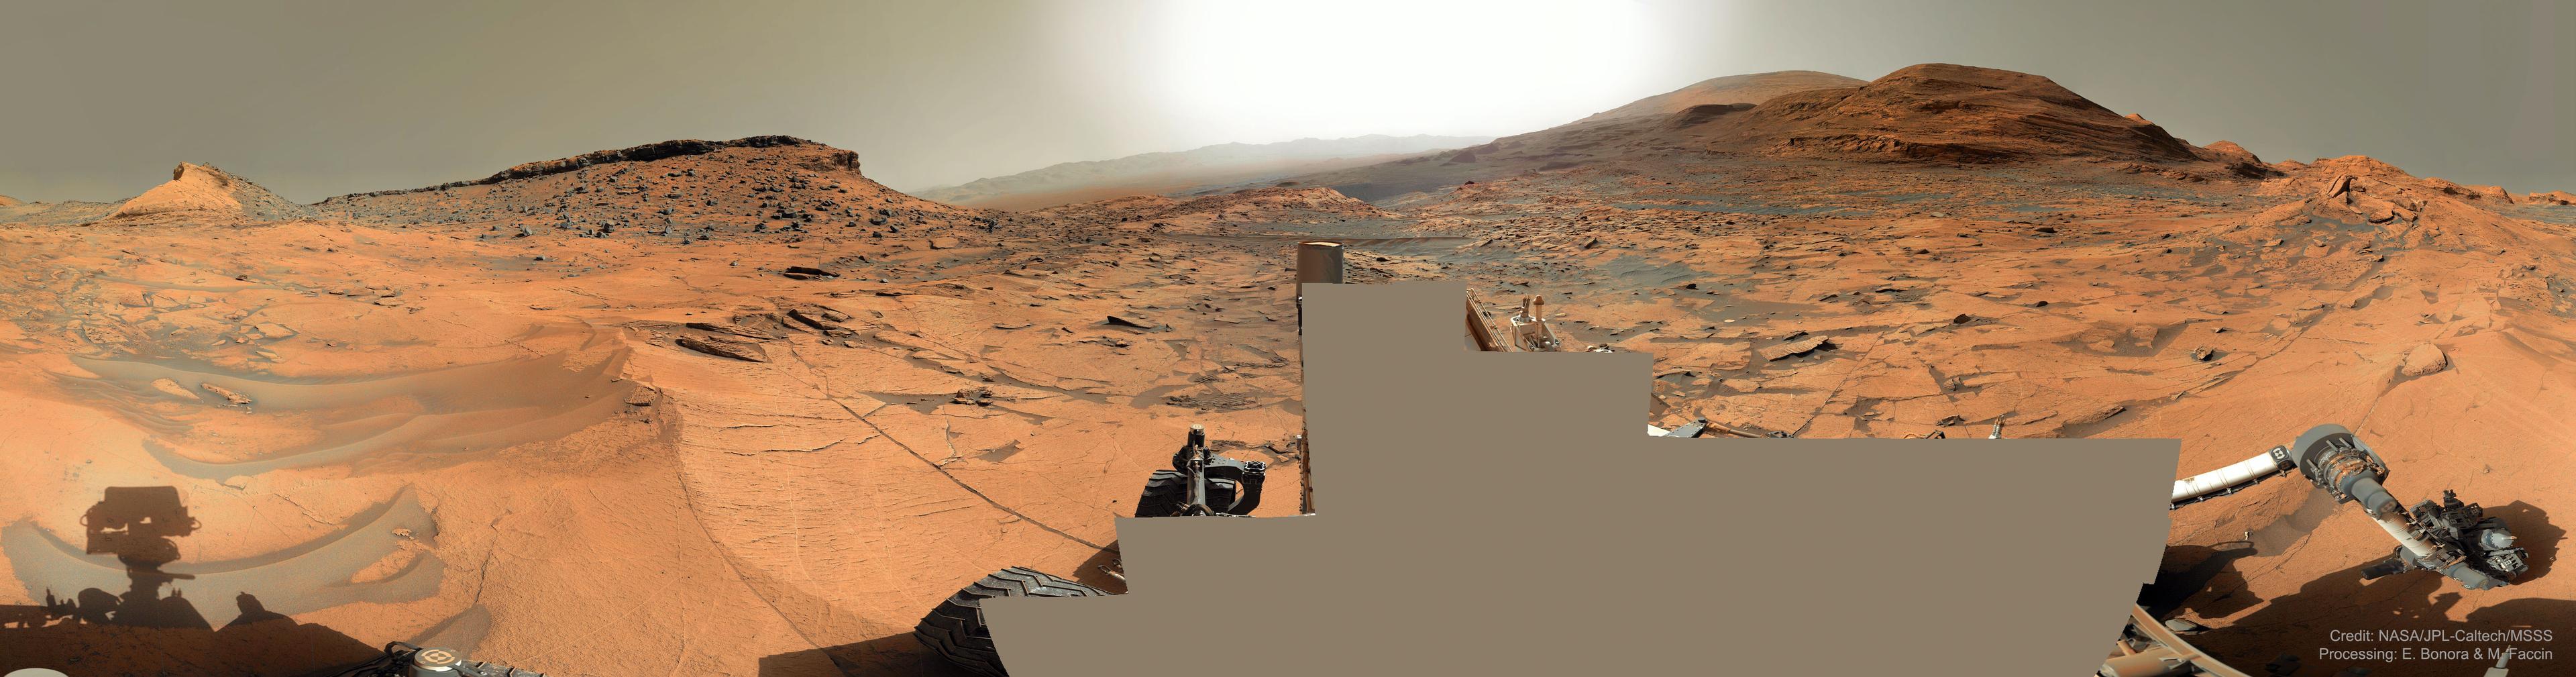 بانوراما لسطح المرّيخ تظهر أرضه الصخرية الحمراء وتلاله ذات الطبقات ورماله الرمادية المنجرفة وغلافه الجوّي الأغبر.